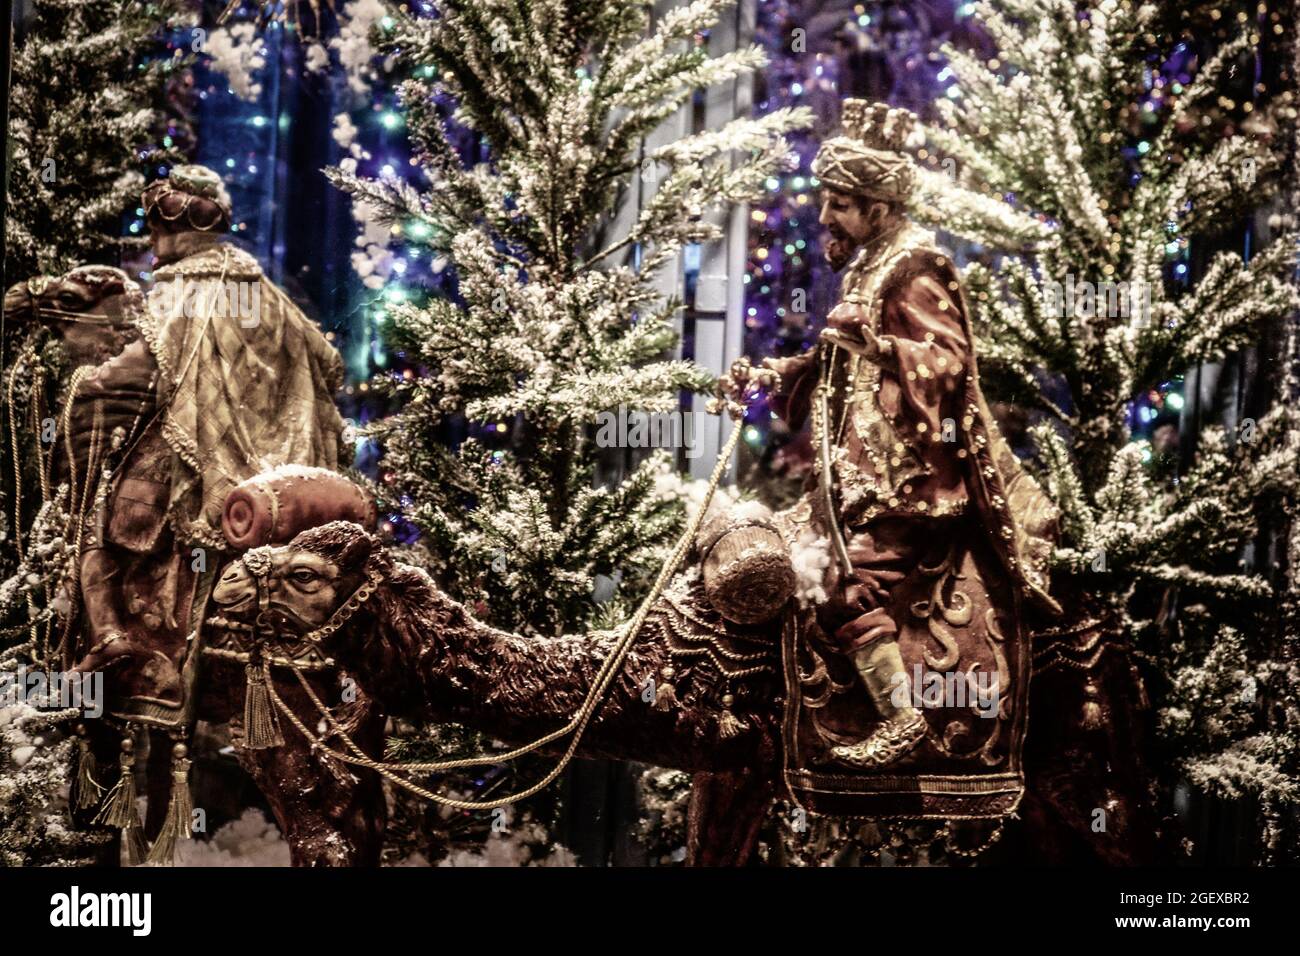 2018 01 03 Athènes Grèce -Noël biblique exposition commerciale d'hommes sages sur des chameaux devant des arbres et des nuits de vacances. Banque D'Images